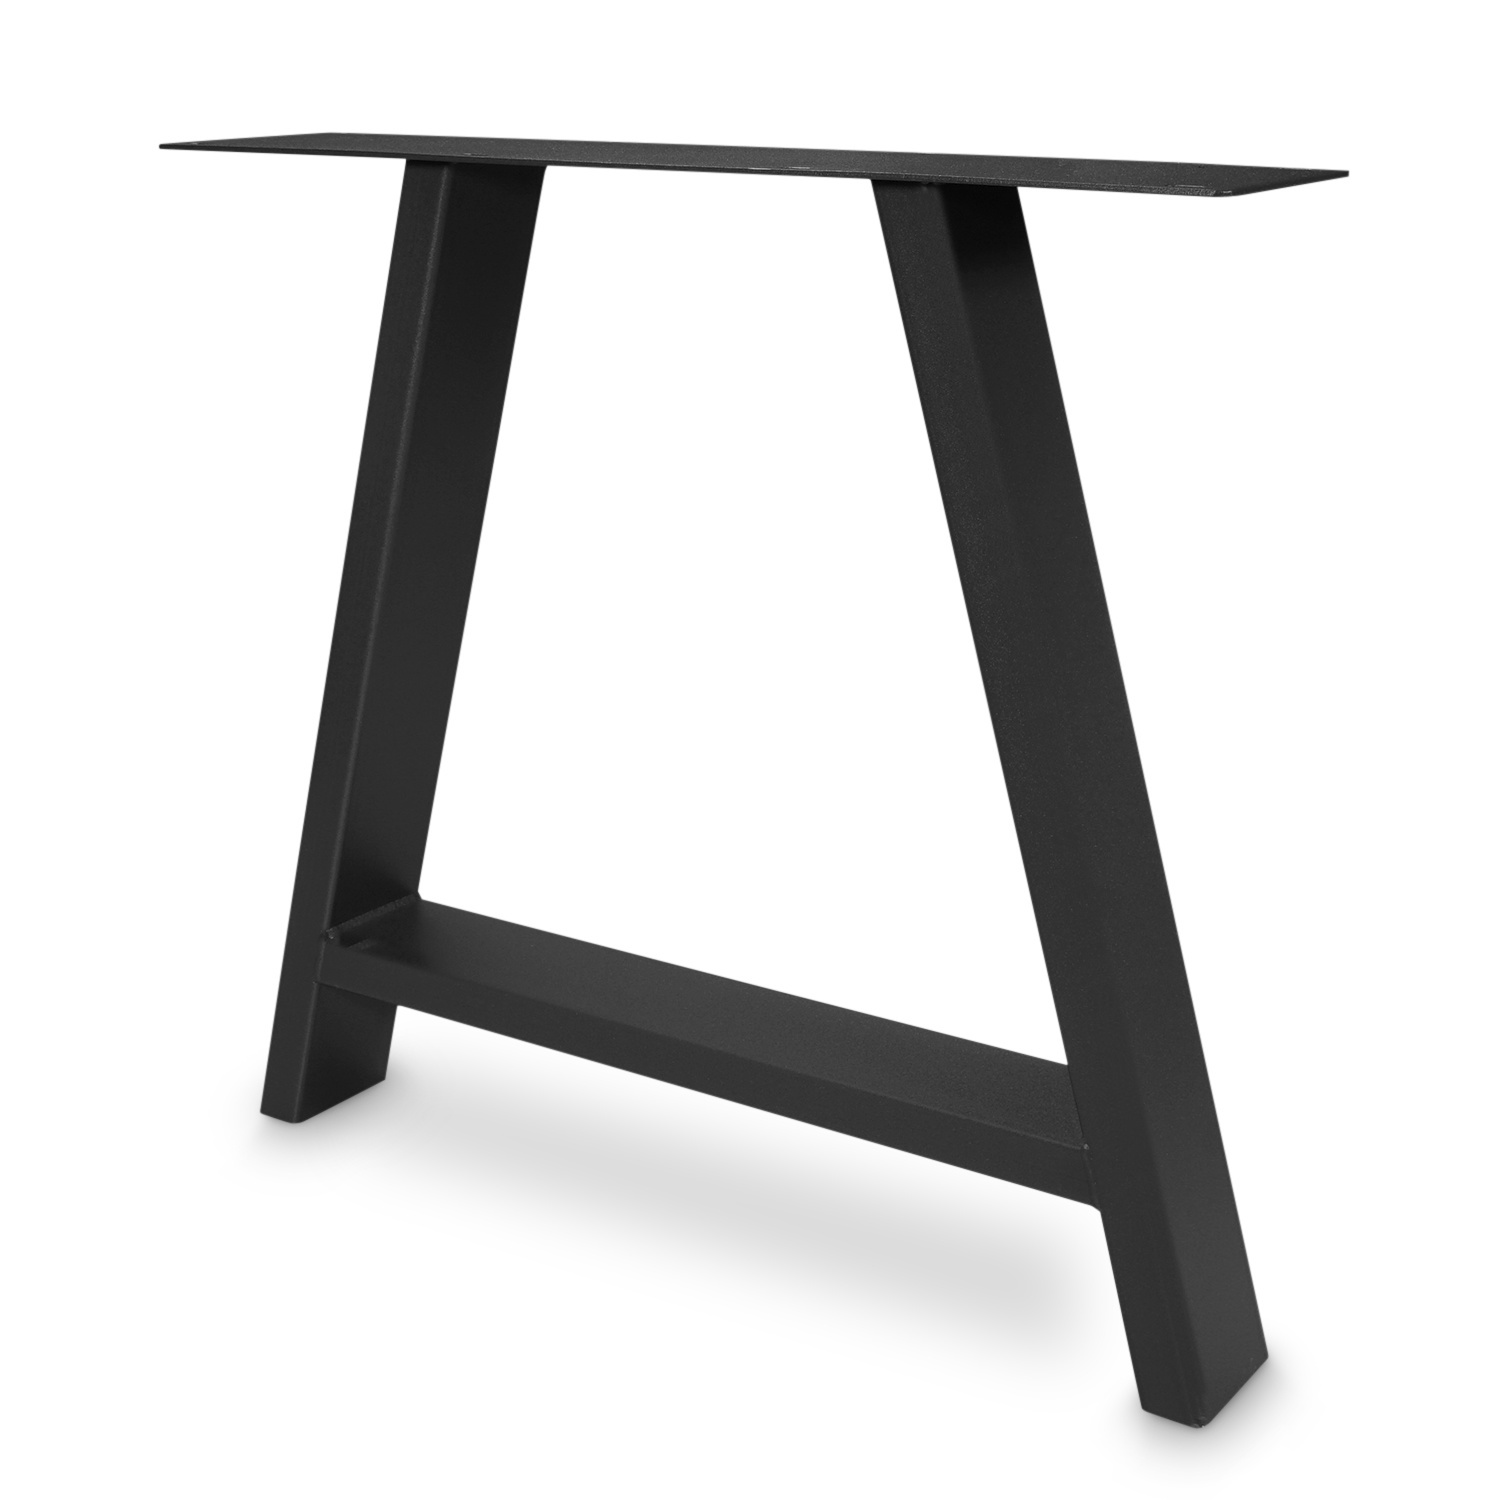  Tischbeine A Metall elegant SET (2 Stück) - 10x4 cm - 78 cm breit - 72 cm hoch - A-form Tischkufen / Tischgestell beschichtet - Schwarz & Weiß